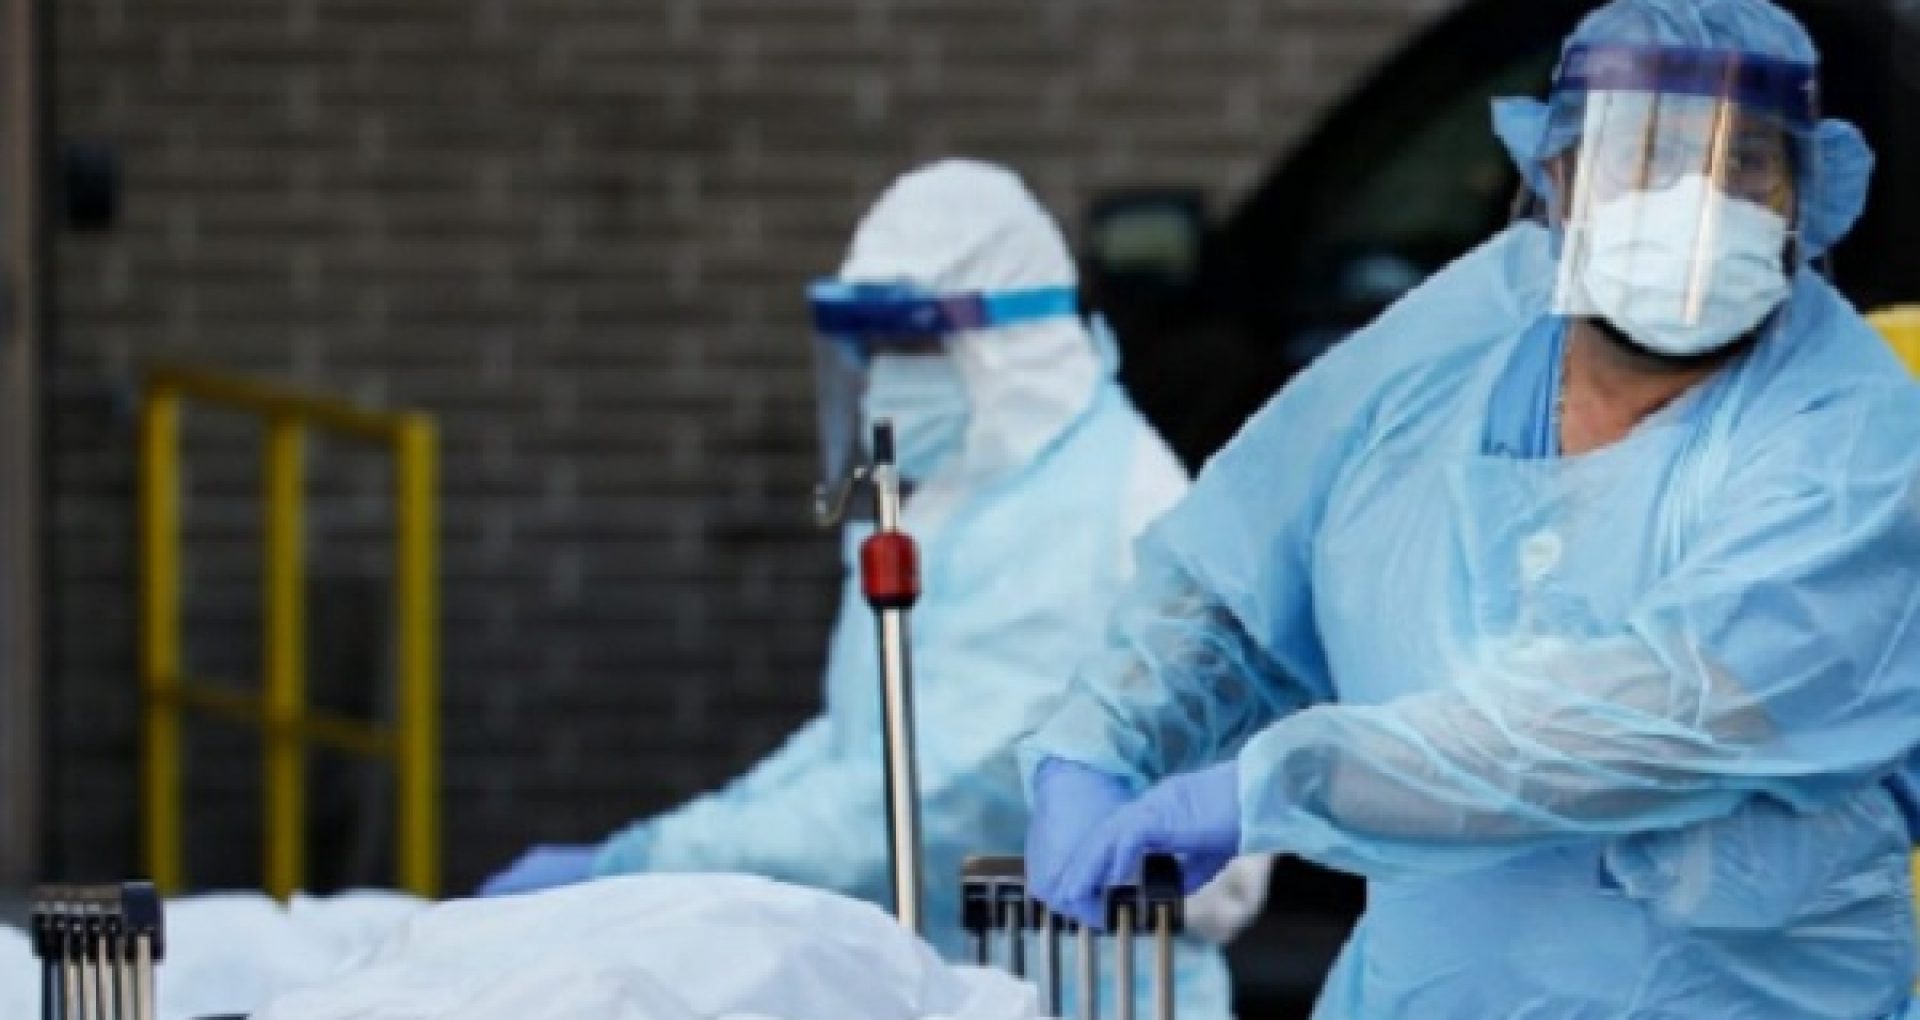 Au fost raportate 39 de decese (21 bărbați și 18 femei), ale unor pacienți infectați cu noul coronavirus, internați în spitale